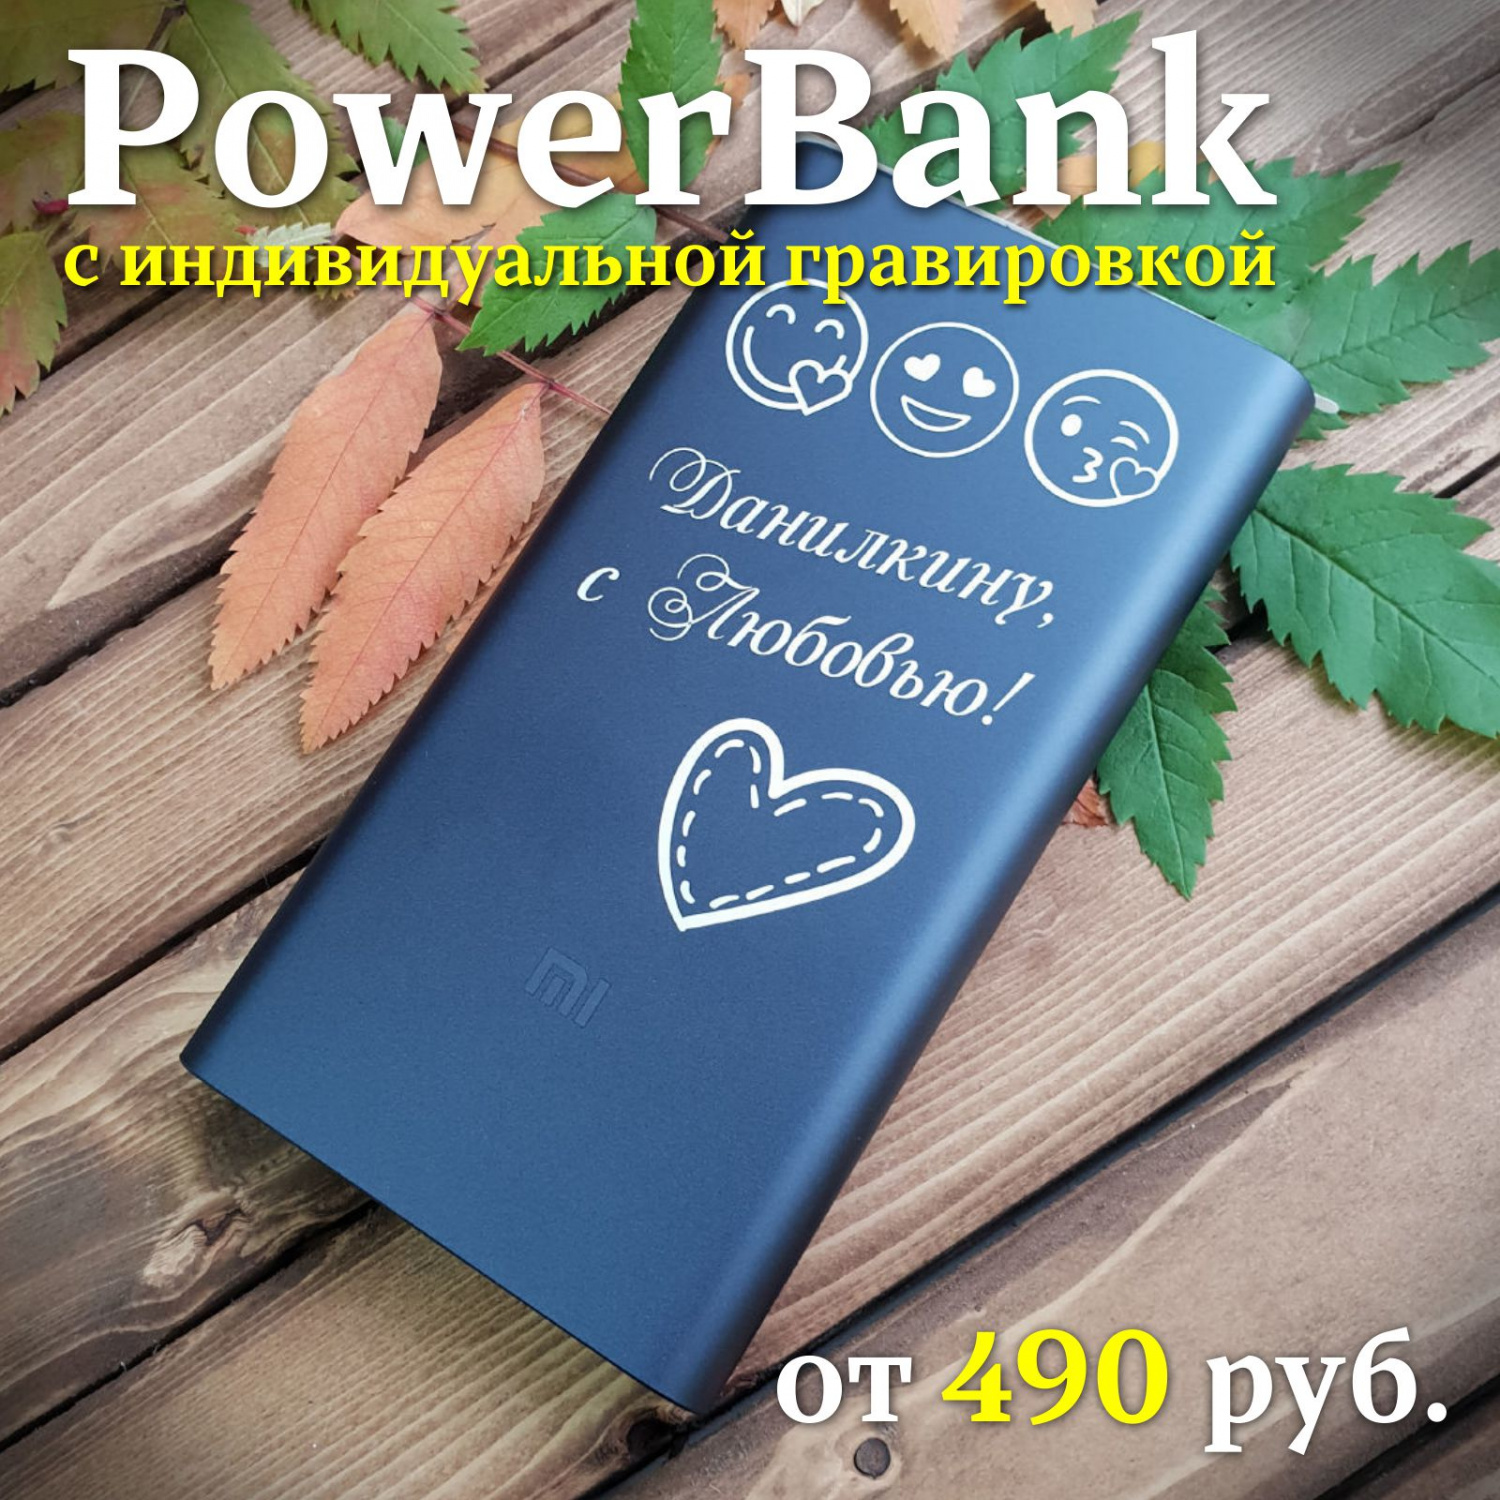 Power Bank с индивидуальной гравировкой RED-2976